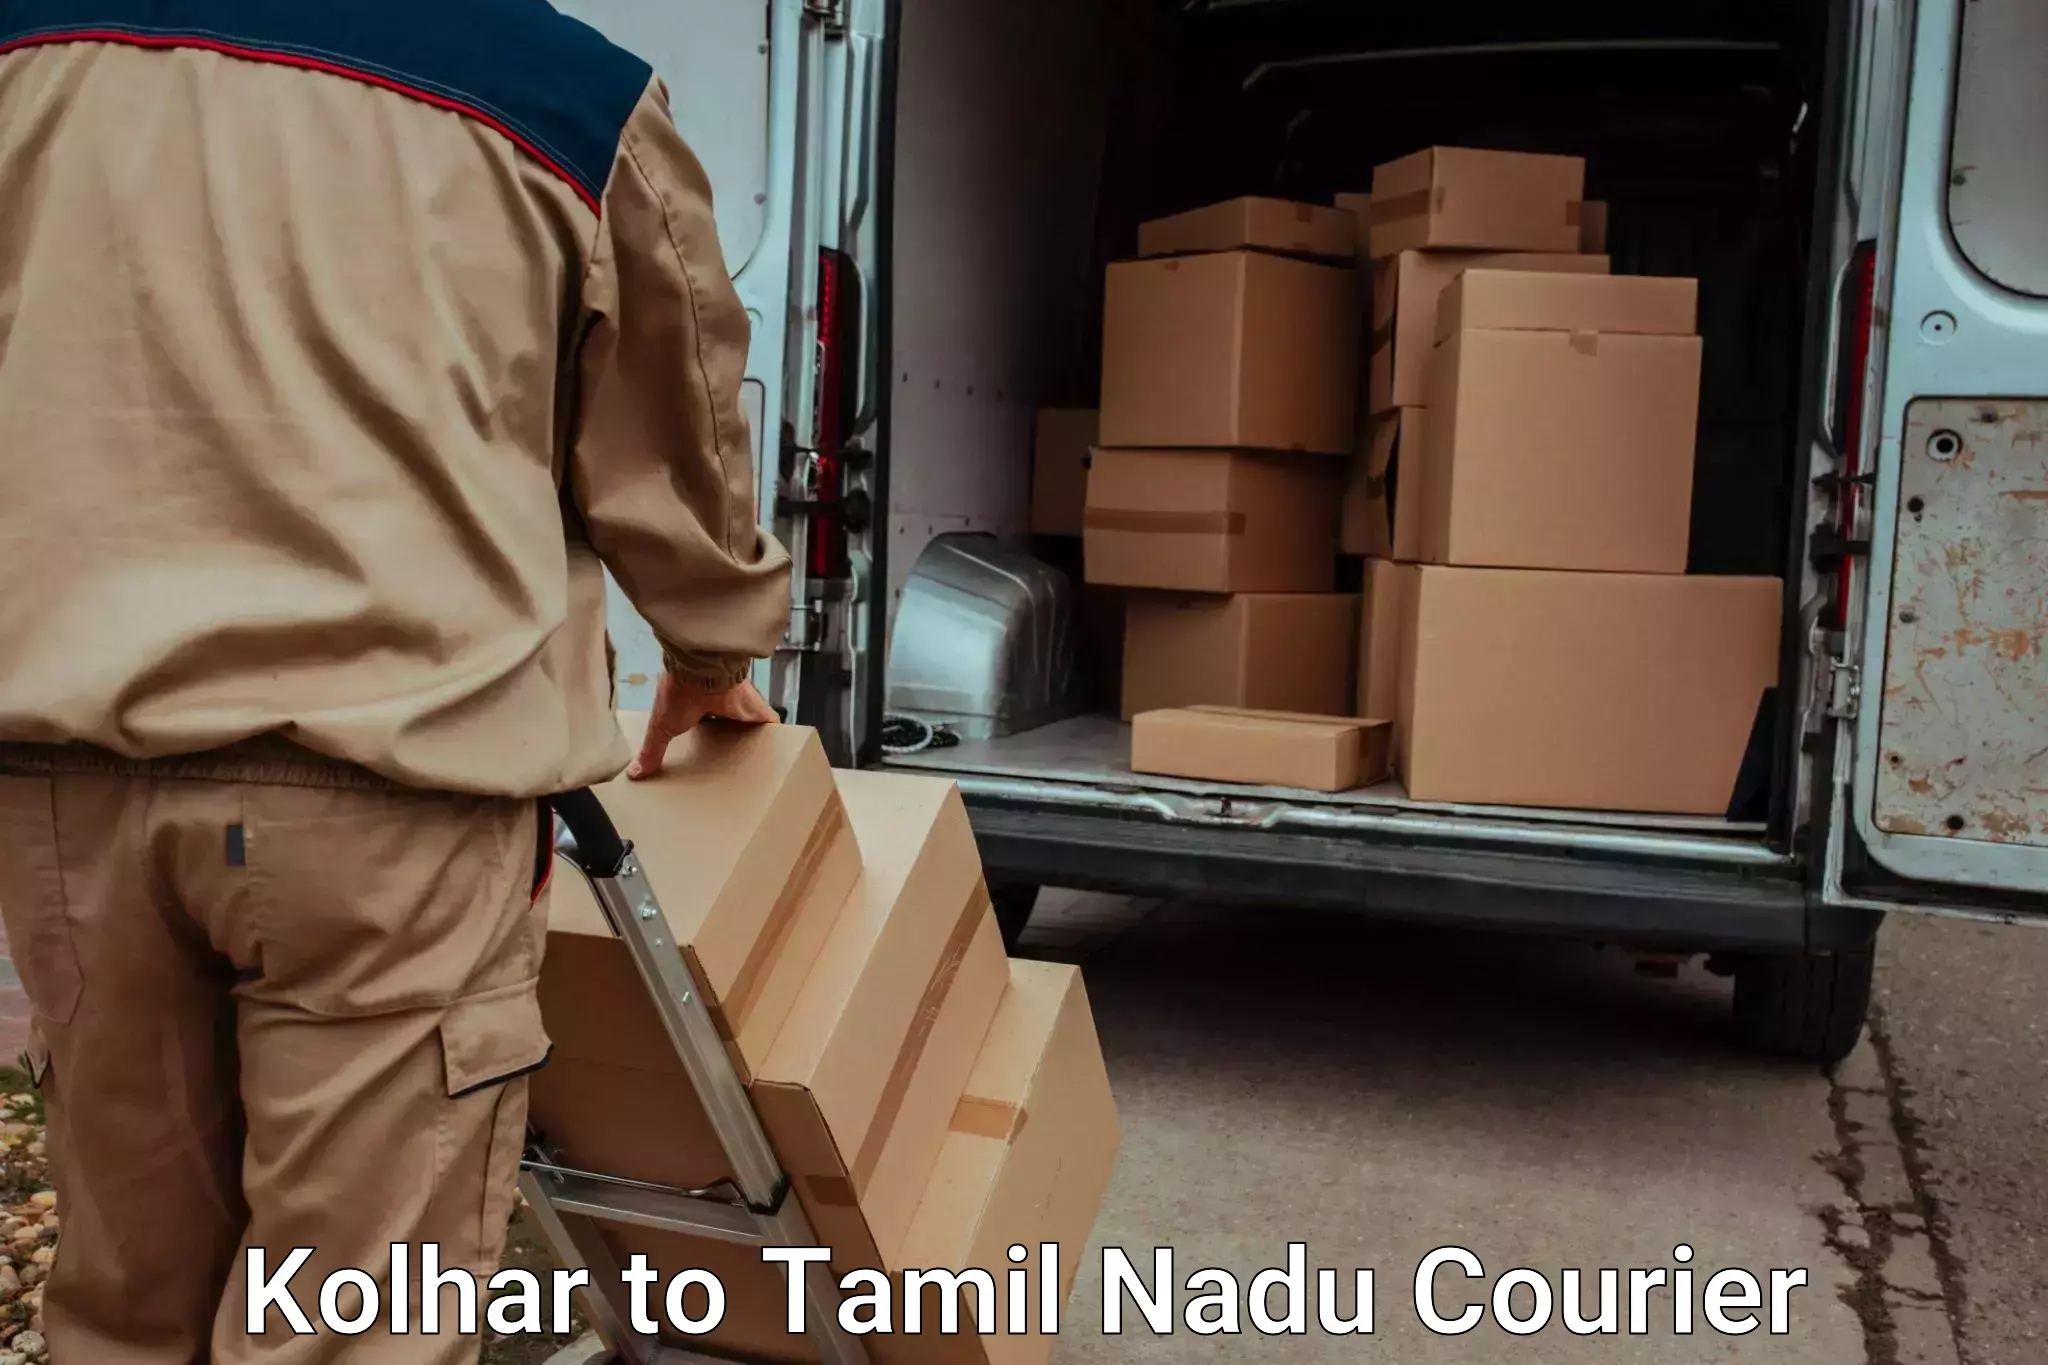 Residential furniture transport Kolhar to Tamil Nadu